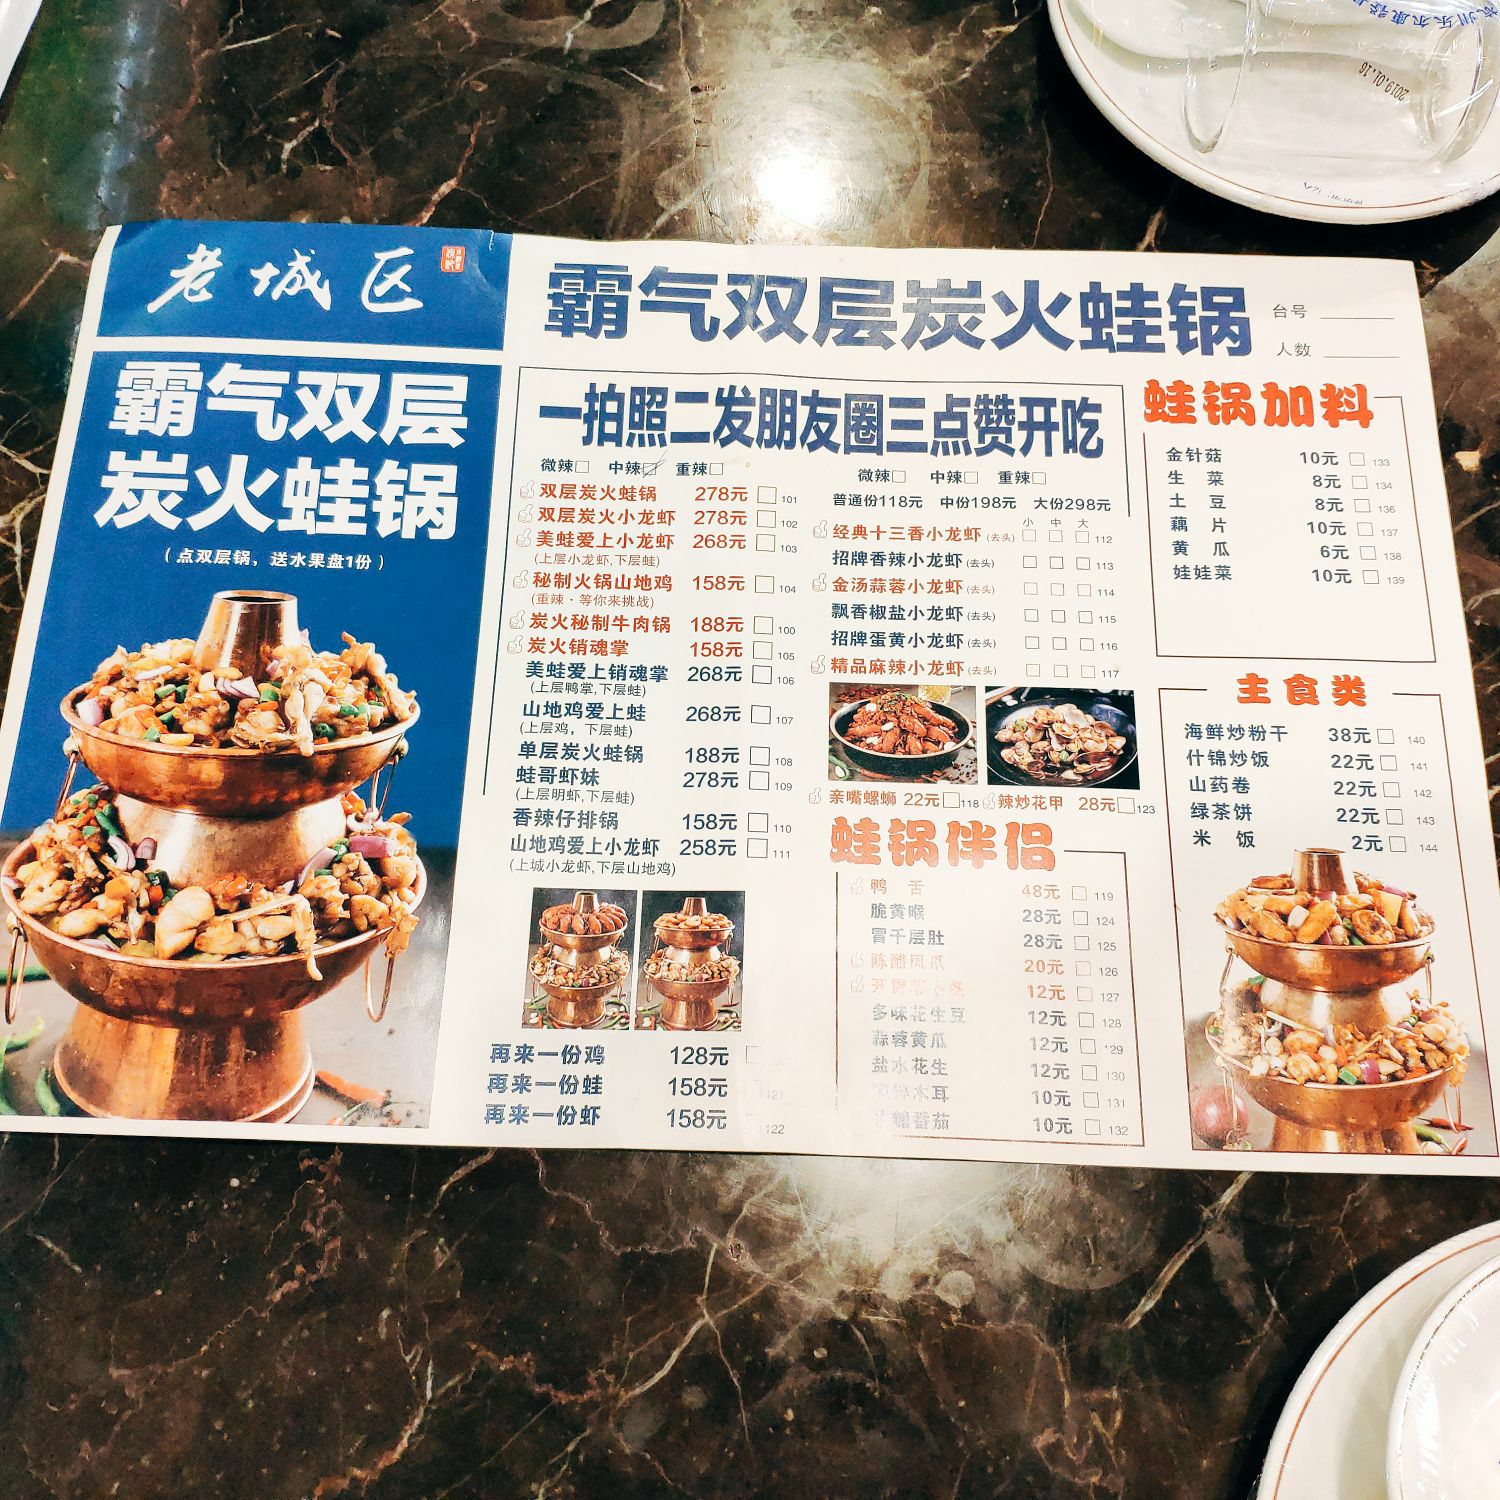 2021上海老城区小龙虾·虾宴美蛙(西湖店)美食餐厅,菜单上没看到有98